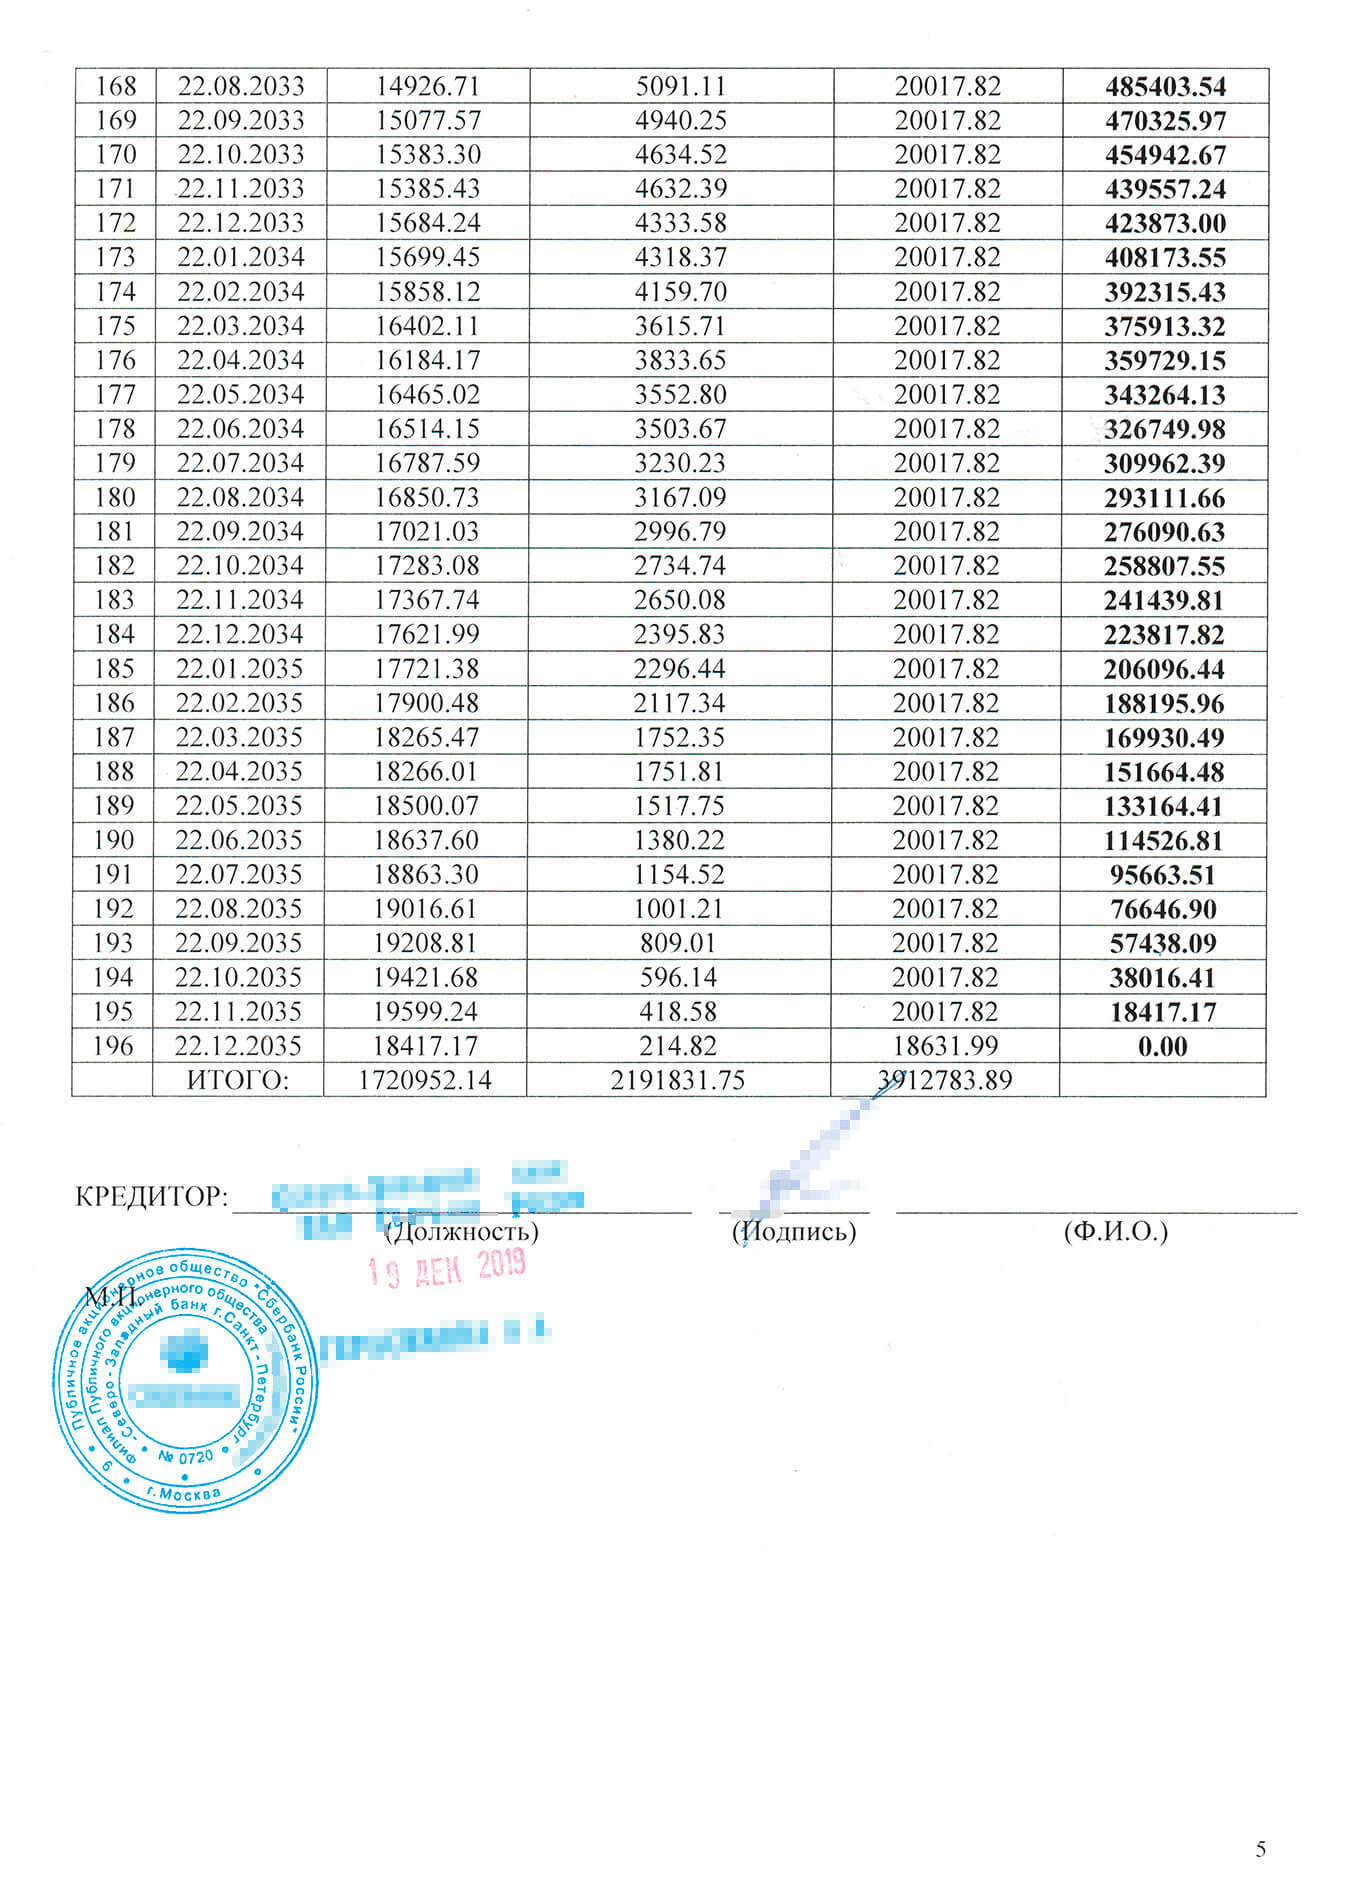 Мой новый график ежемесячных платежей: 20 тысяч рублей до конца 2035 года. Отсрочку по основному долгу на первый месяц мне почему-то все же подключили. Возможно, кредитку заблокировали из-за этого